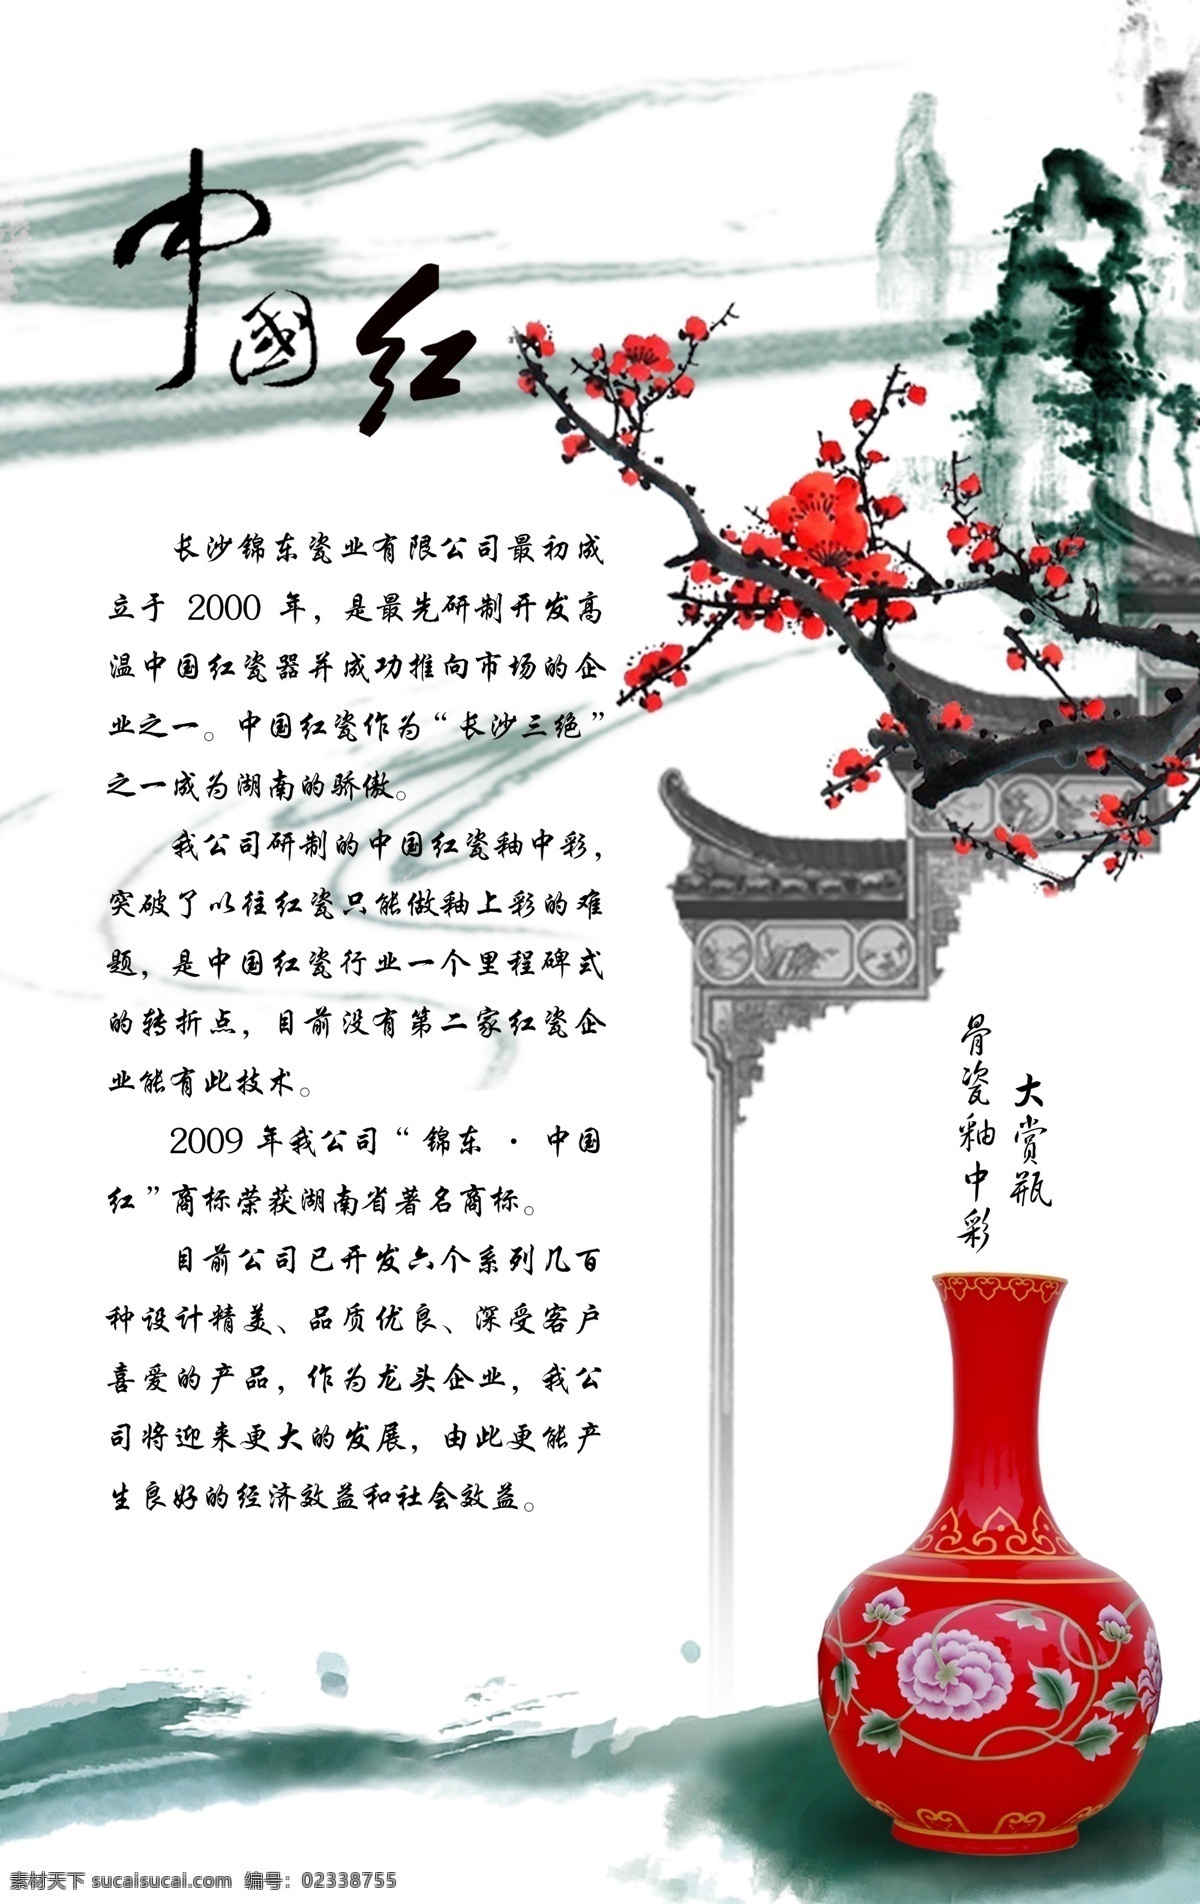 中国红瓷器 中国红 瓷器 中国 红 简介 花瓶 中国风感觉 梅花 人物影响 彩瓶 中国风 水墨感觉 广告设计模板 源文件